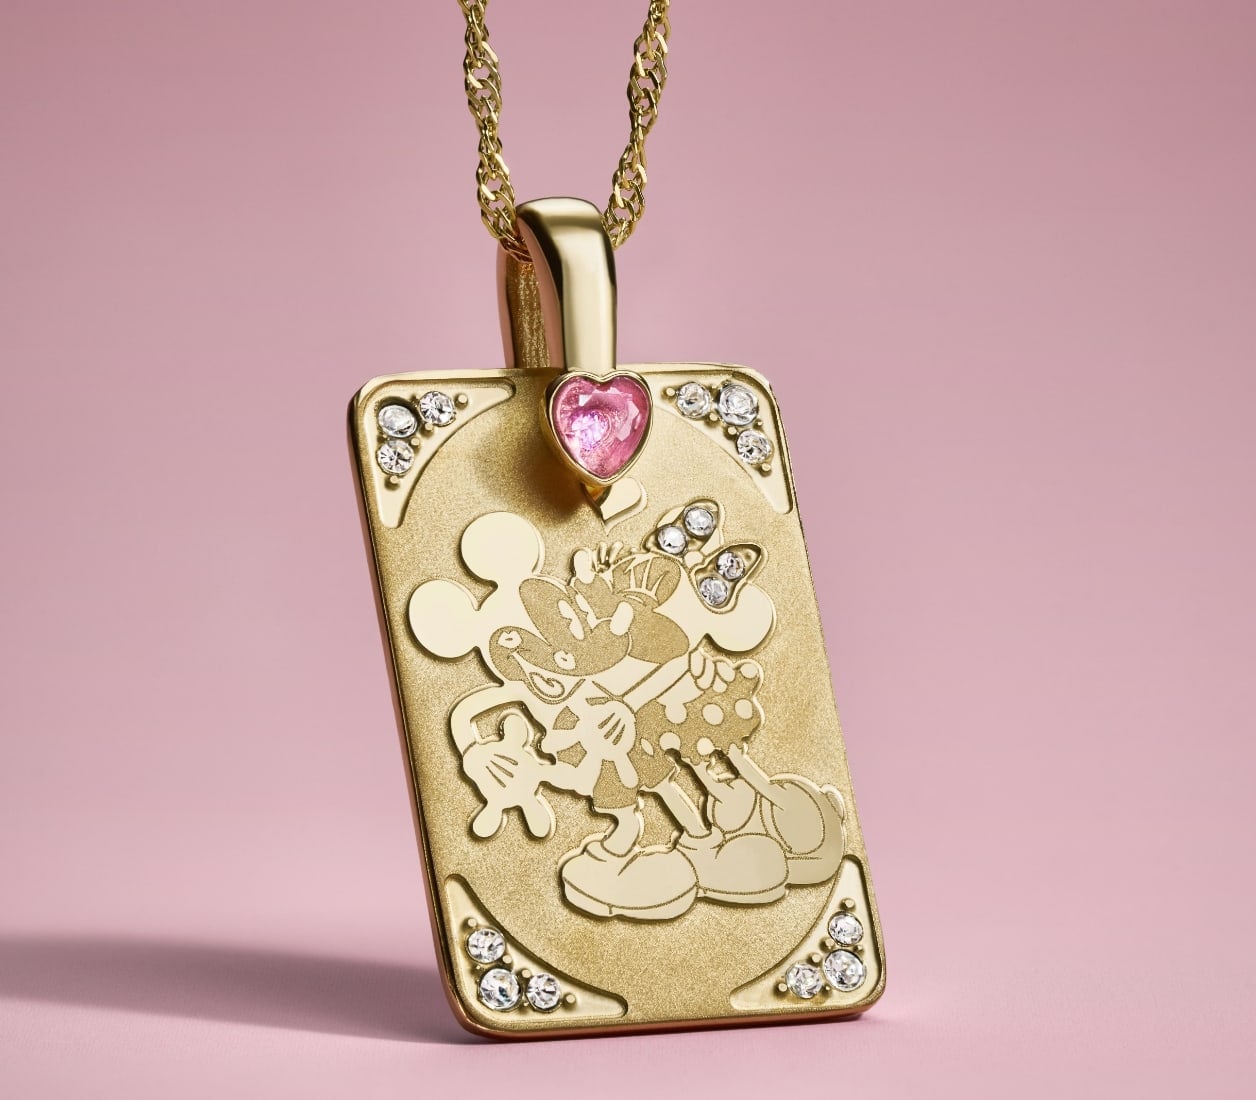 Le collier pendentif doré à l’effigie de Mickey et Minnie, rehaussé de cristaux.